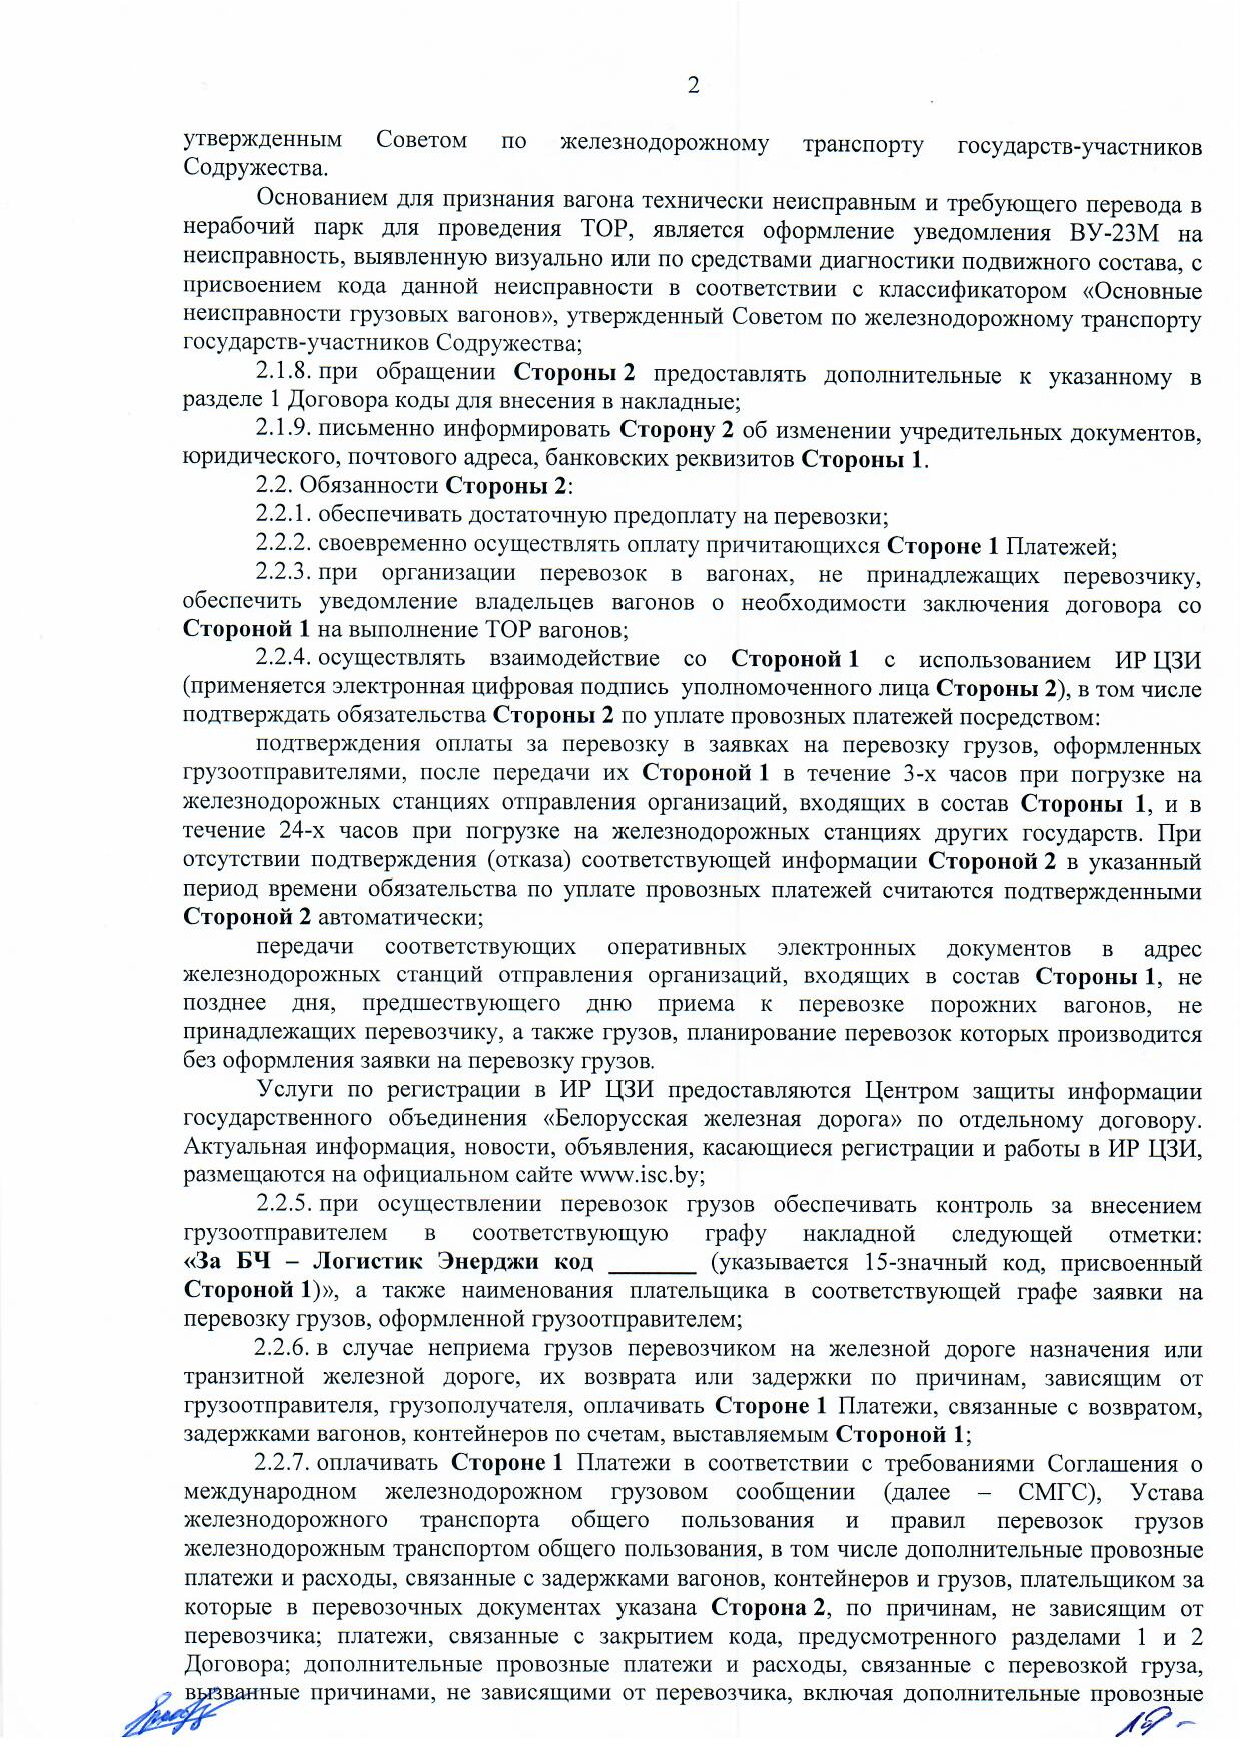 Договор между БЖД и ООО «Логистик Энерджи» от 29.11.2021 № ИРЦ/Ю-710 (Страница 2)